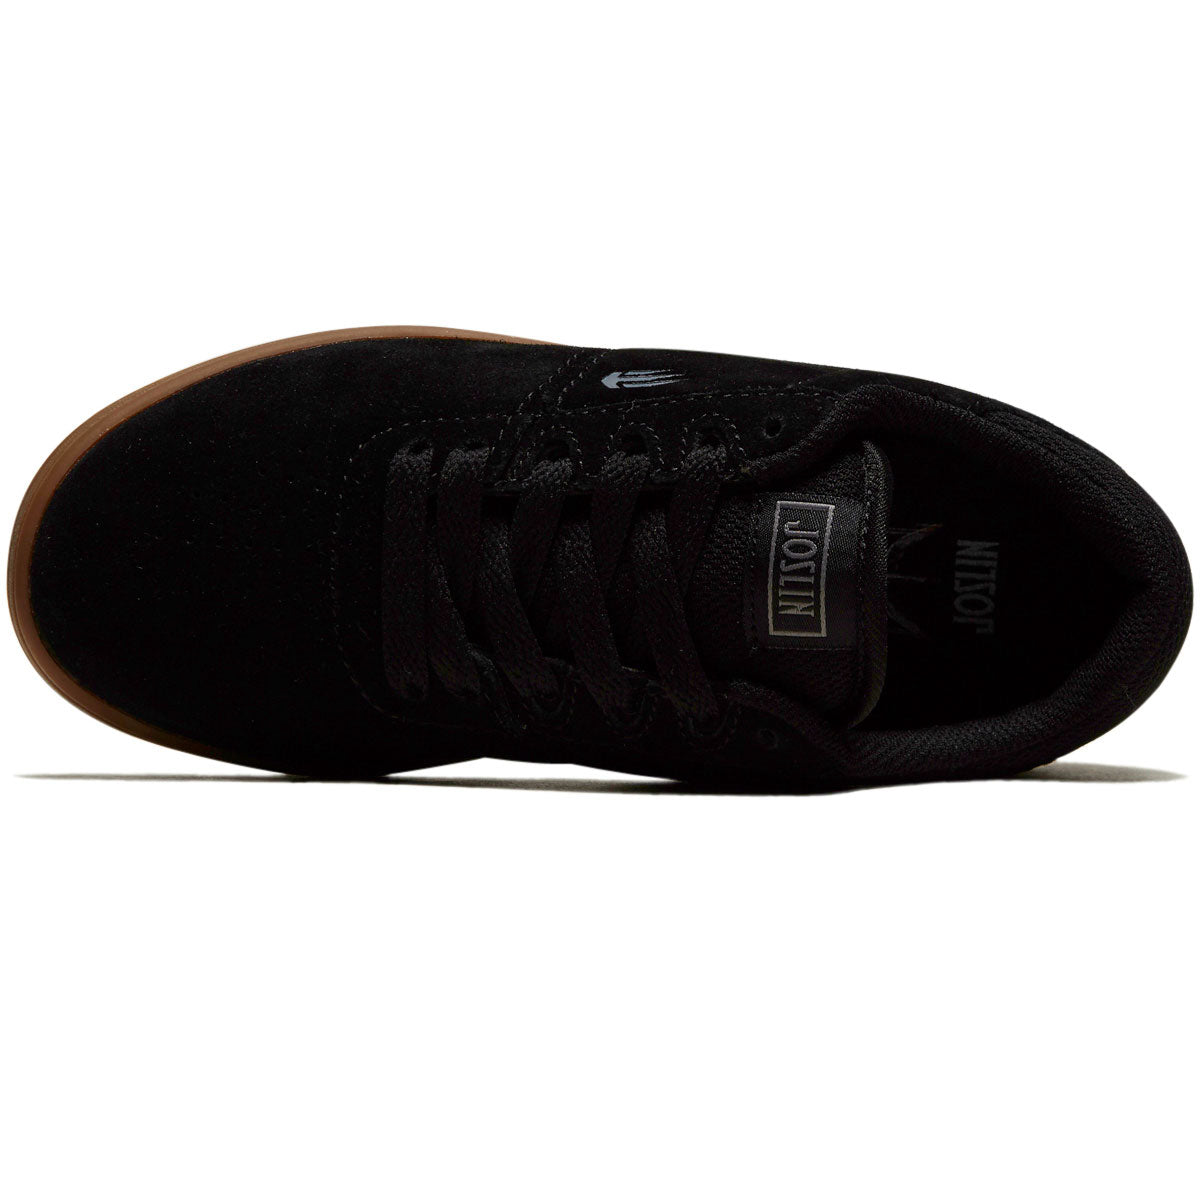 Etnies Youth Josl1n Shoes - Black/Gum image 3